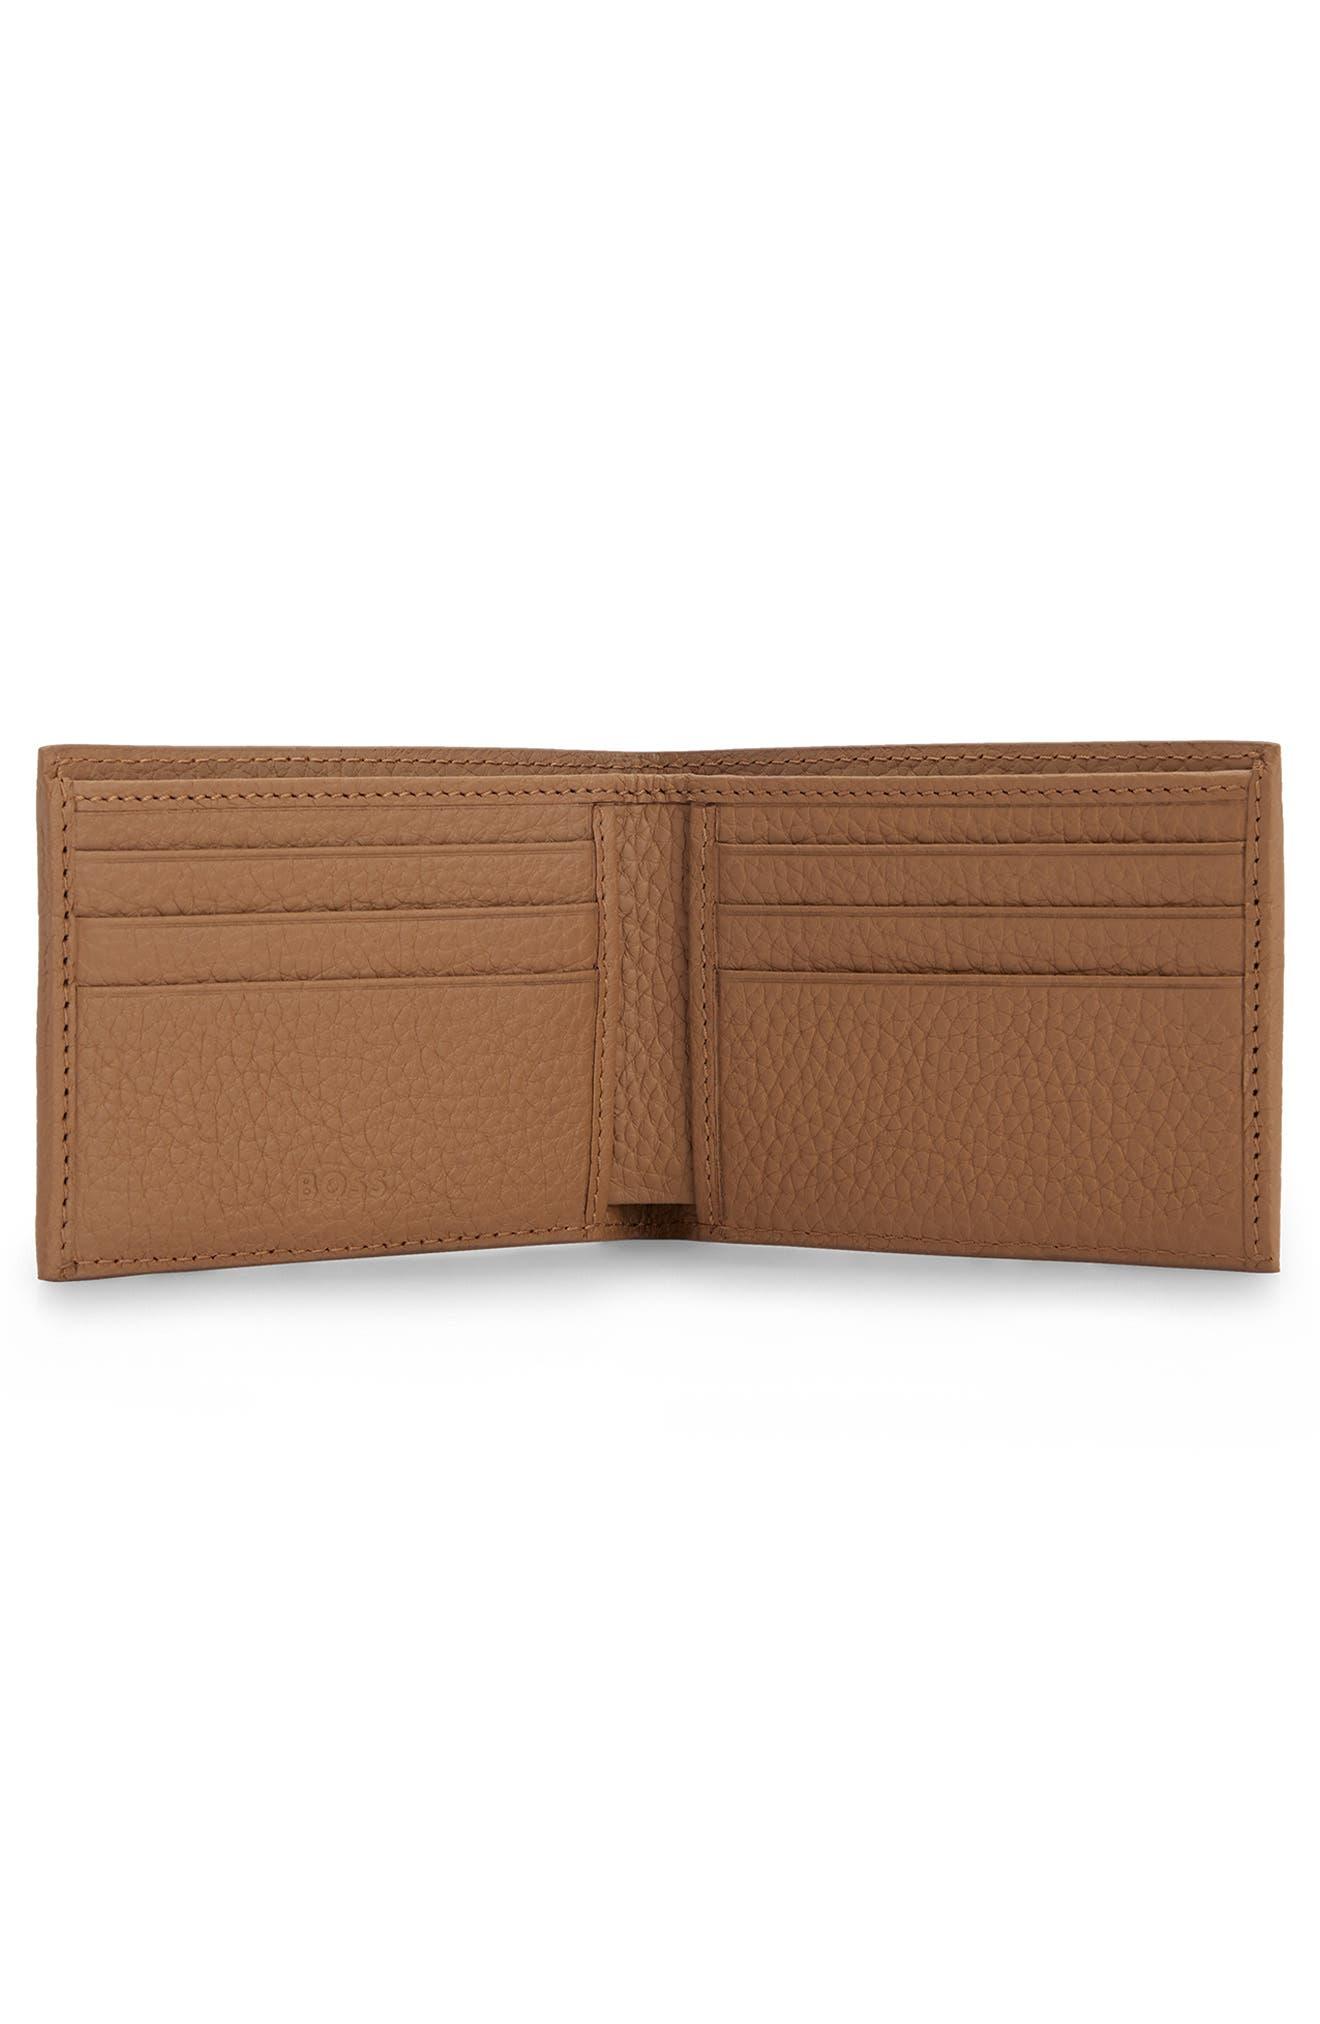 BOSS by HUGO BOSS Crosstown Leather Bifold Wallet in Brown for Men | Lyst